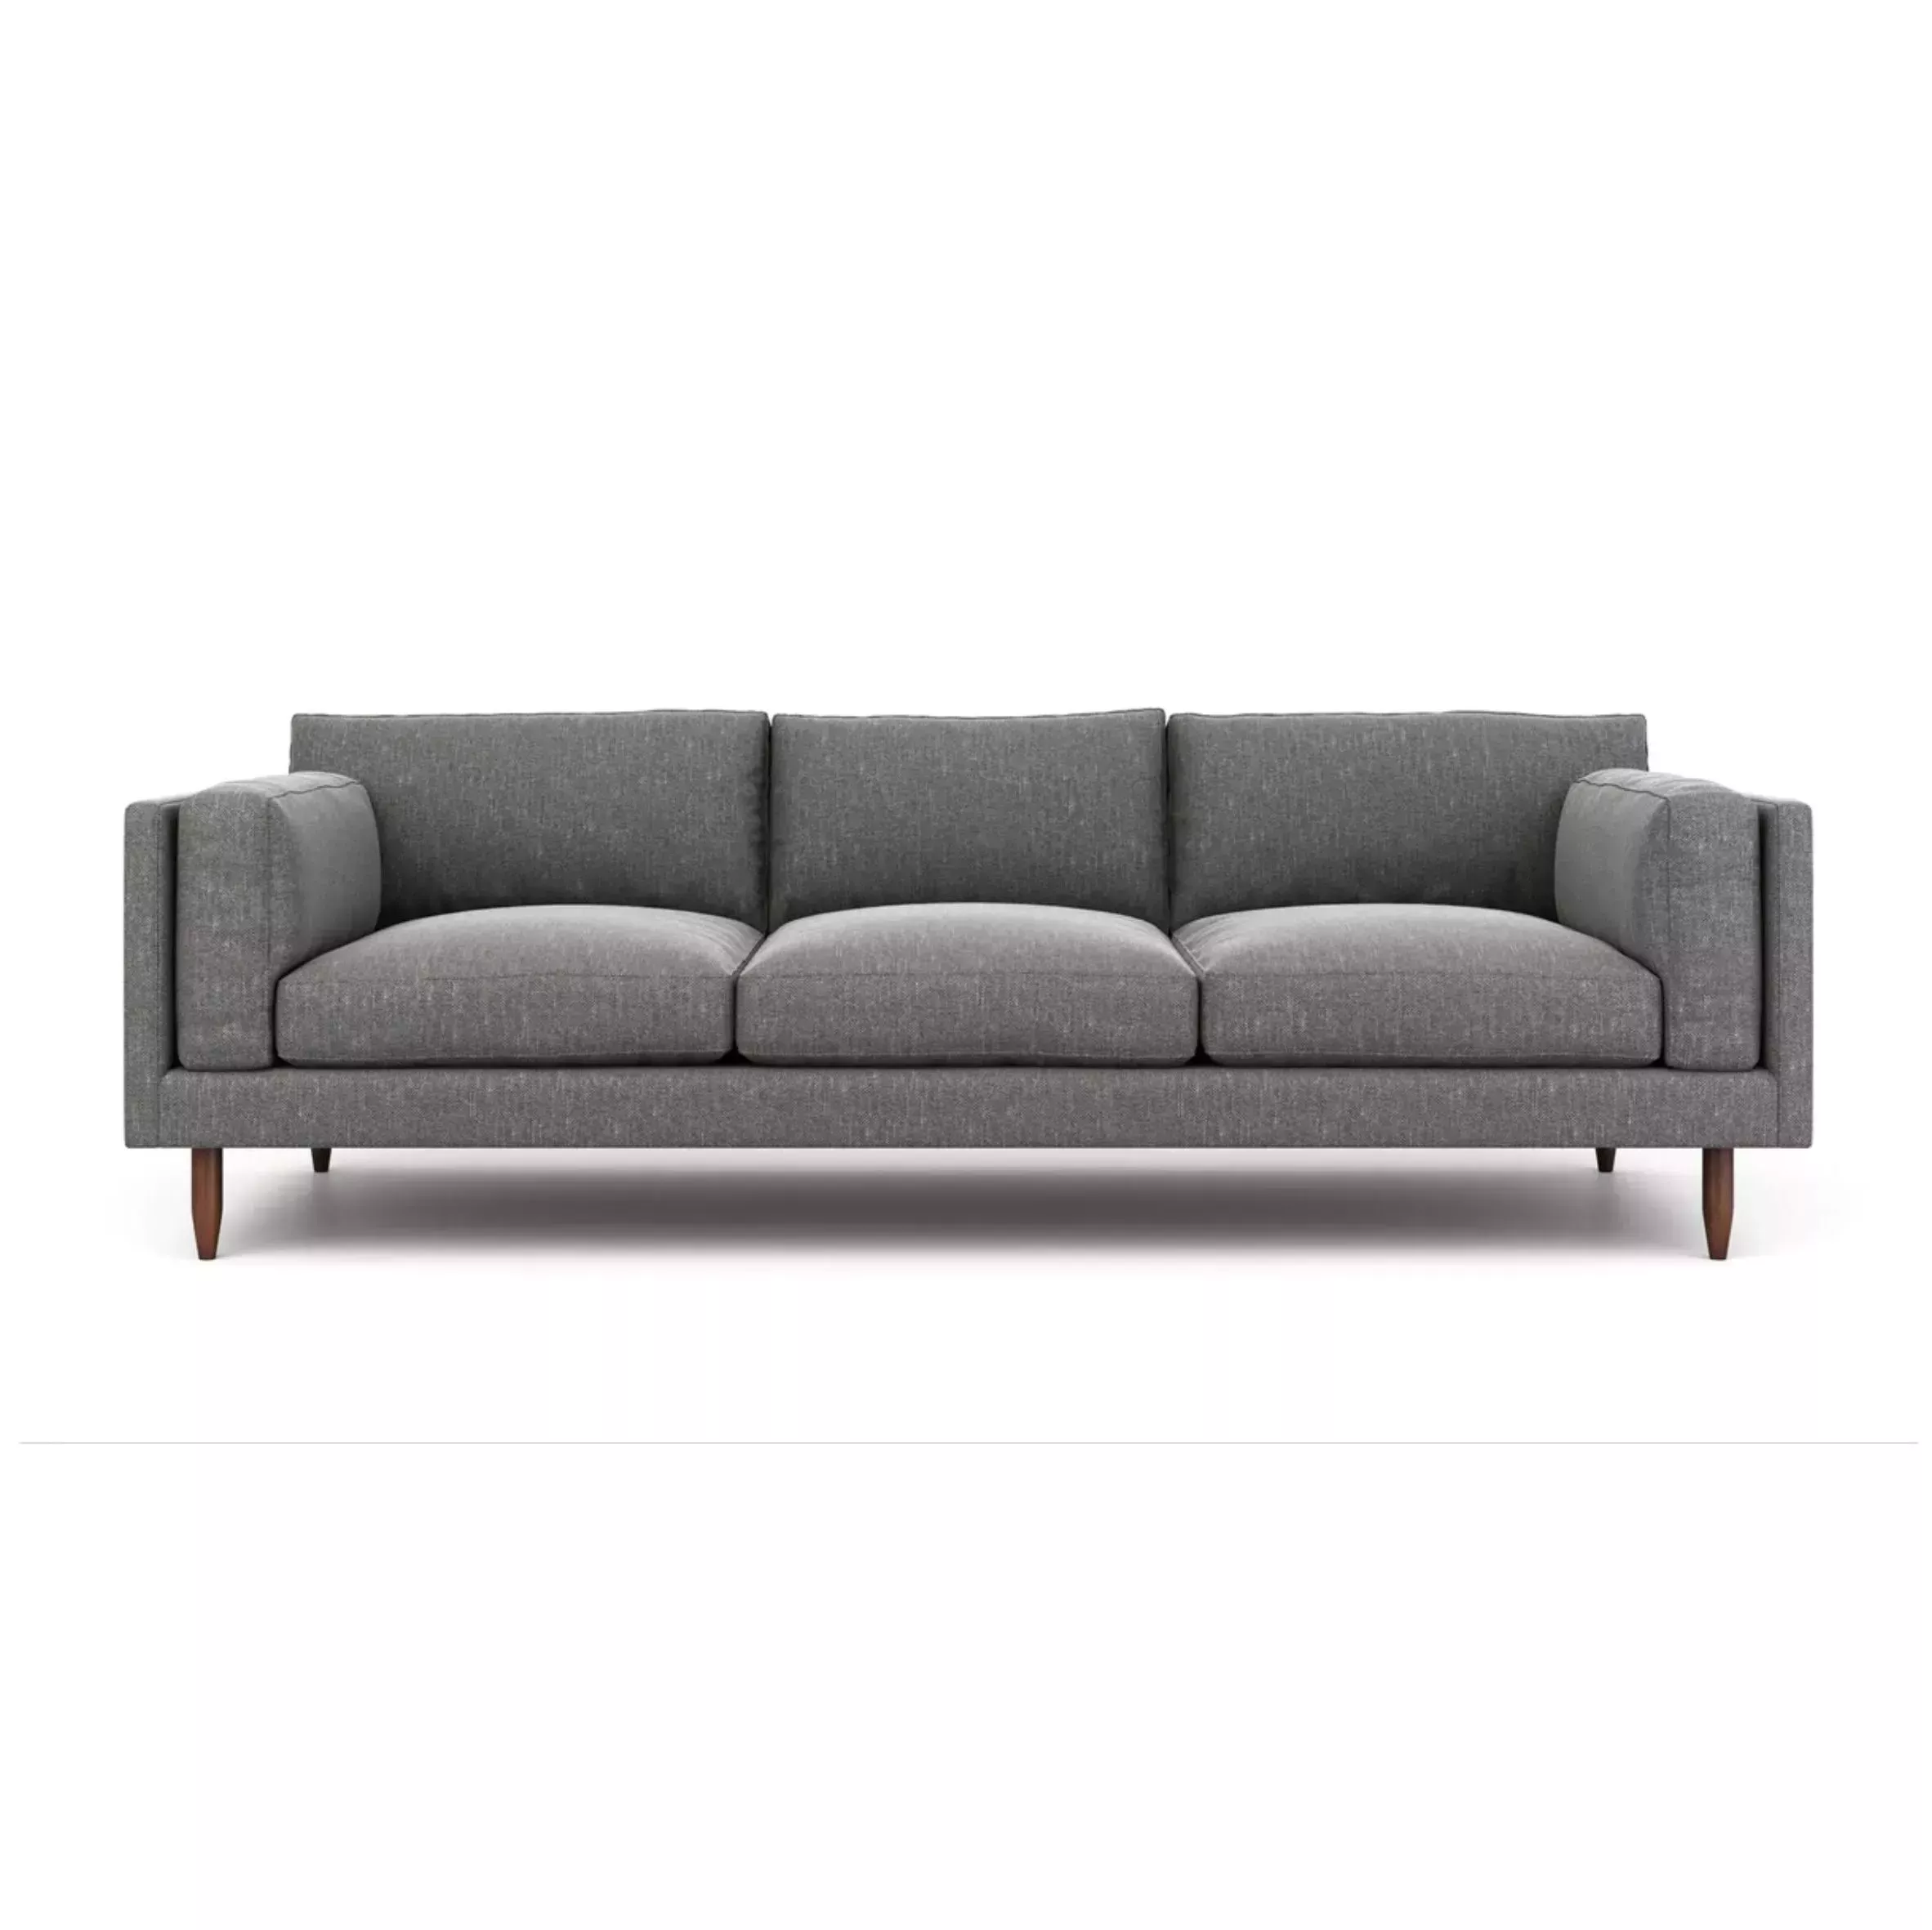 Estos sofás nube garantizan la máxima comodidad y relajación